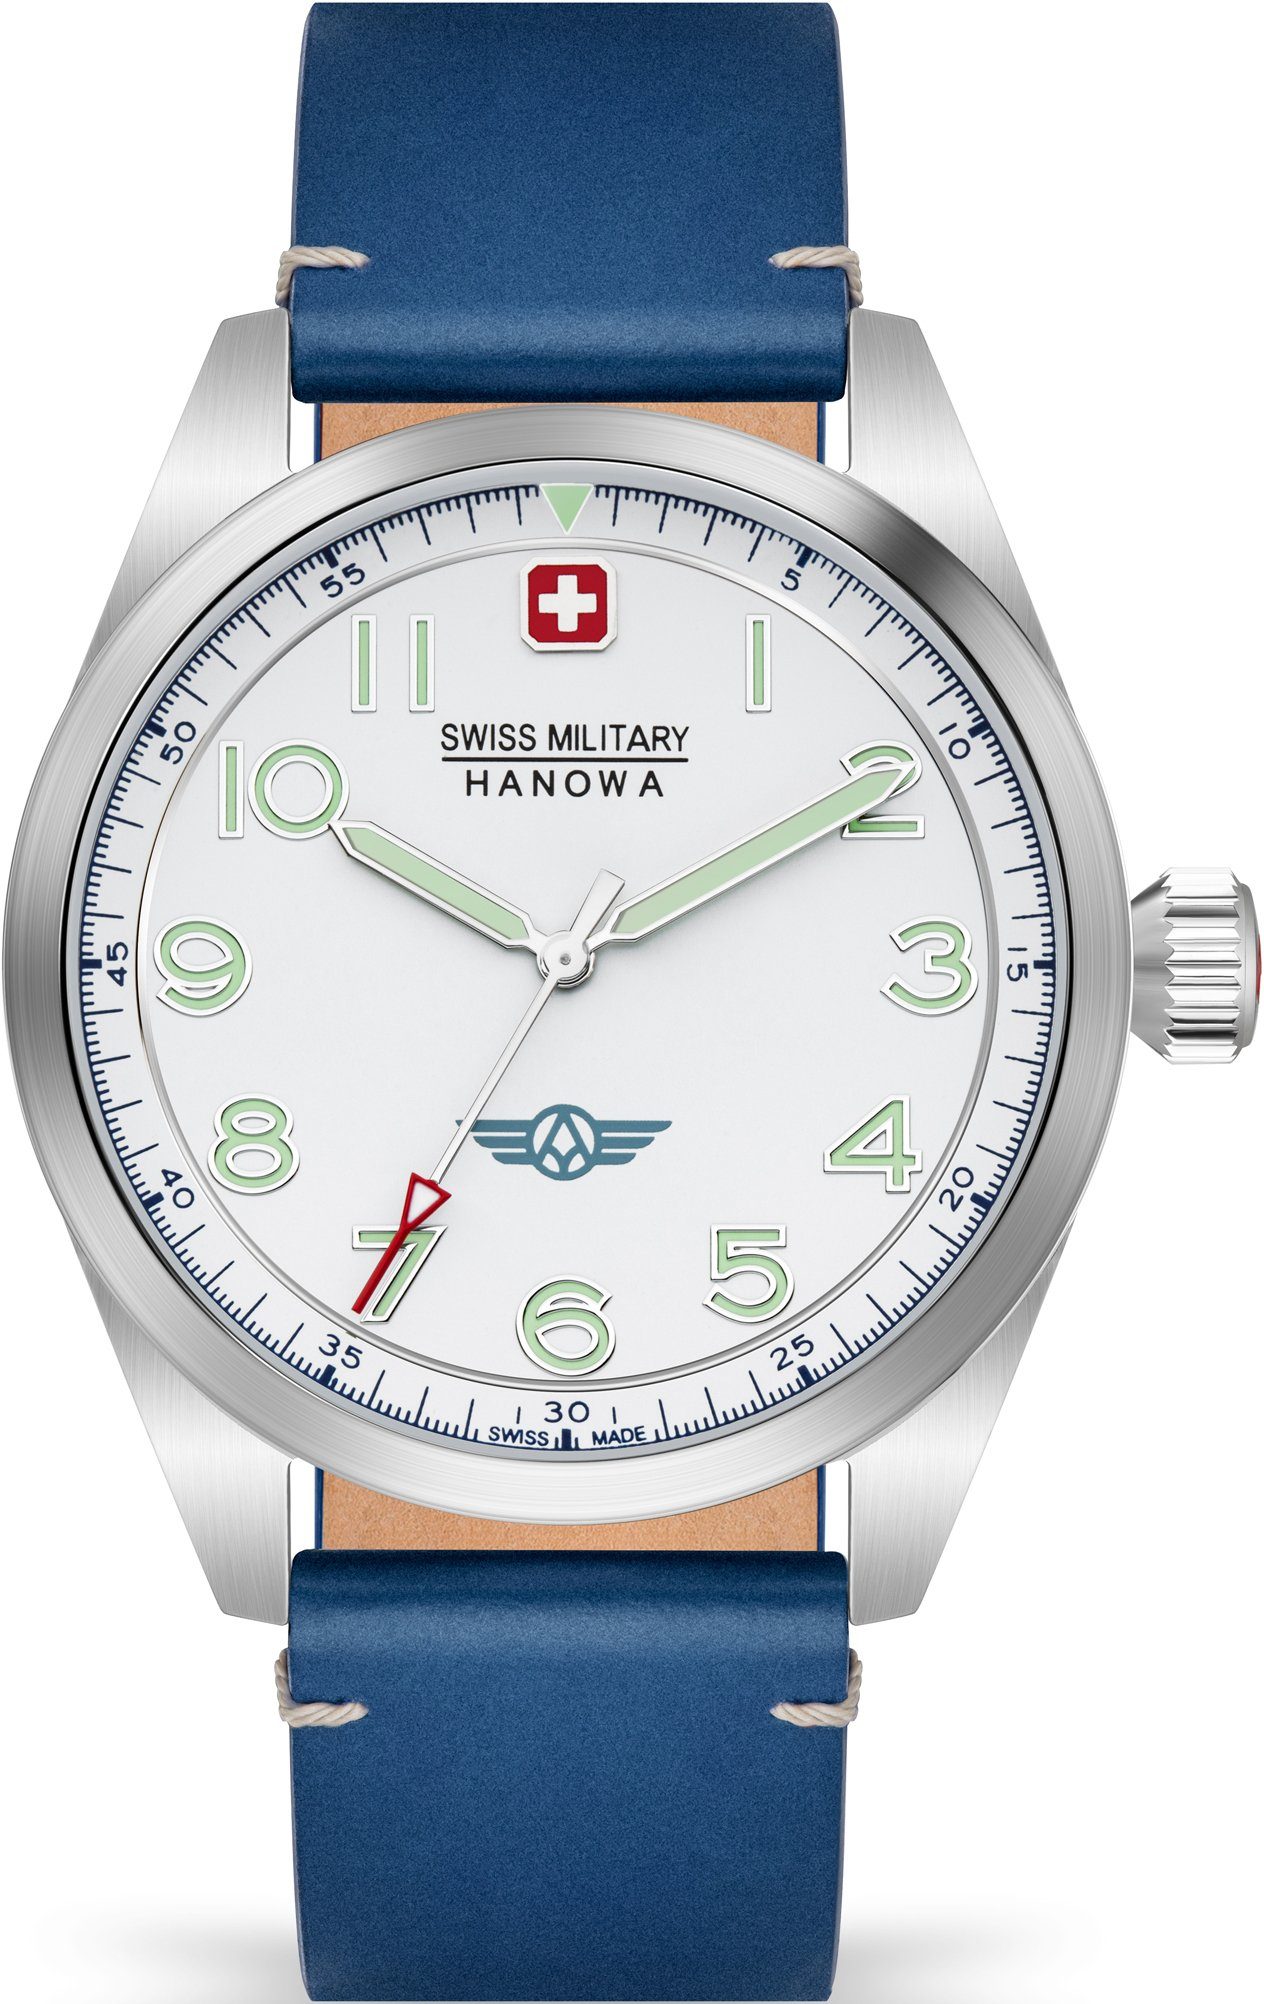 Schweizer Military Swiss blau, SMWGA2100403 Hanowa FALCON, Uhr weiß